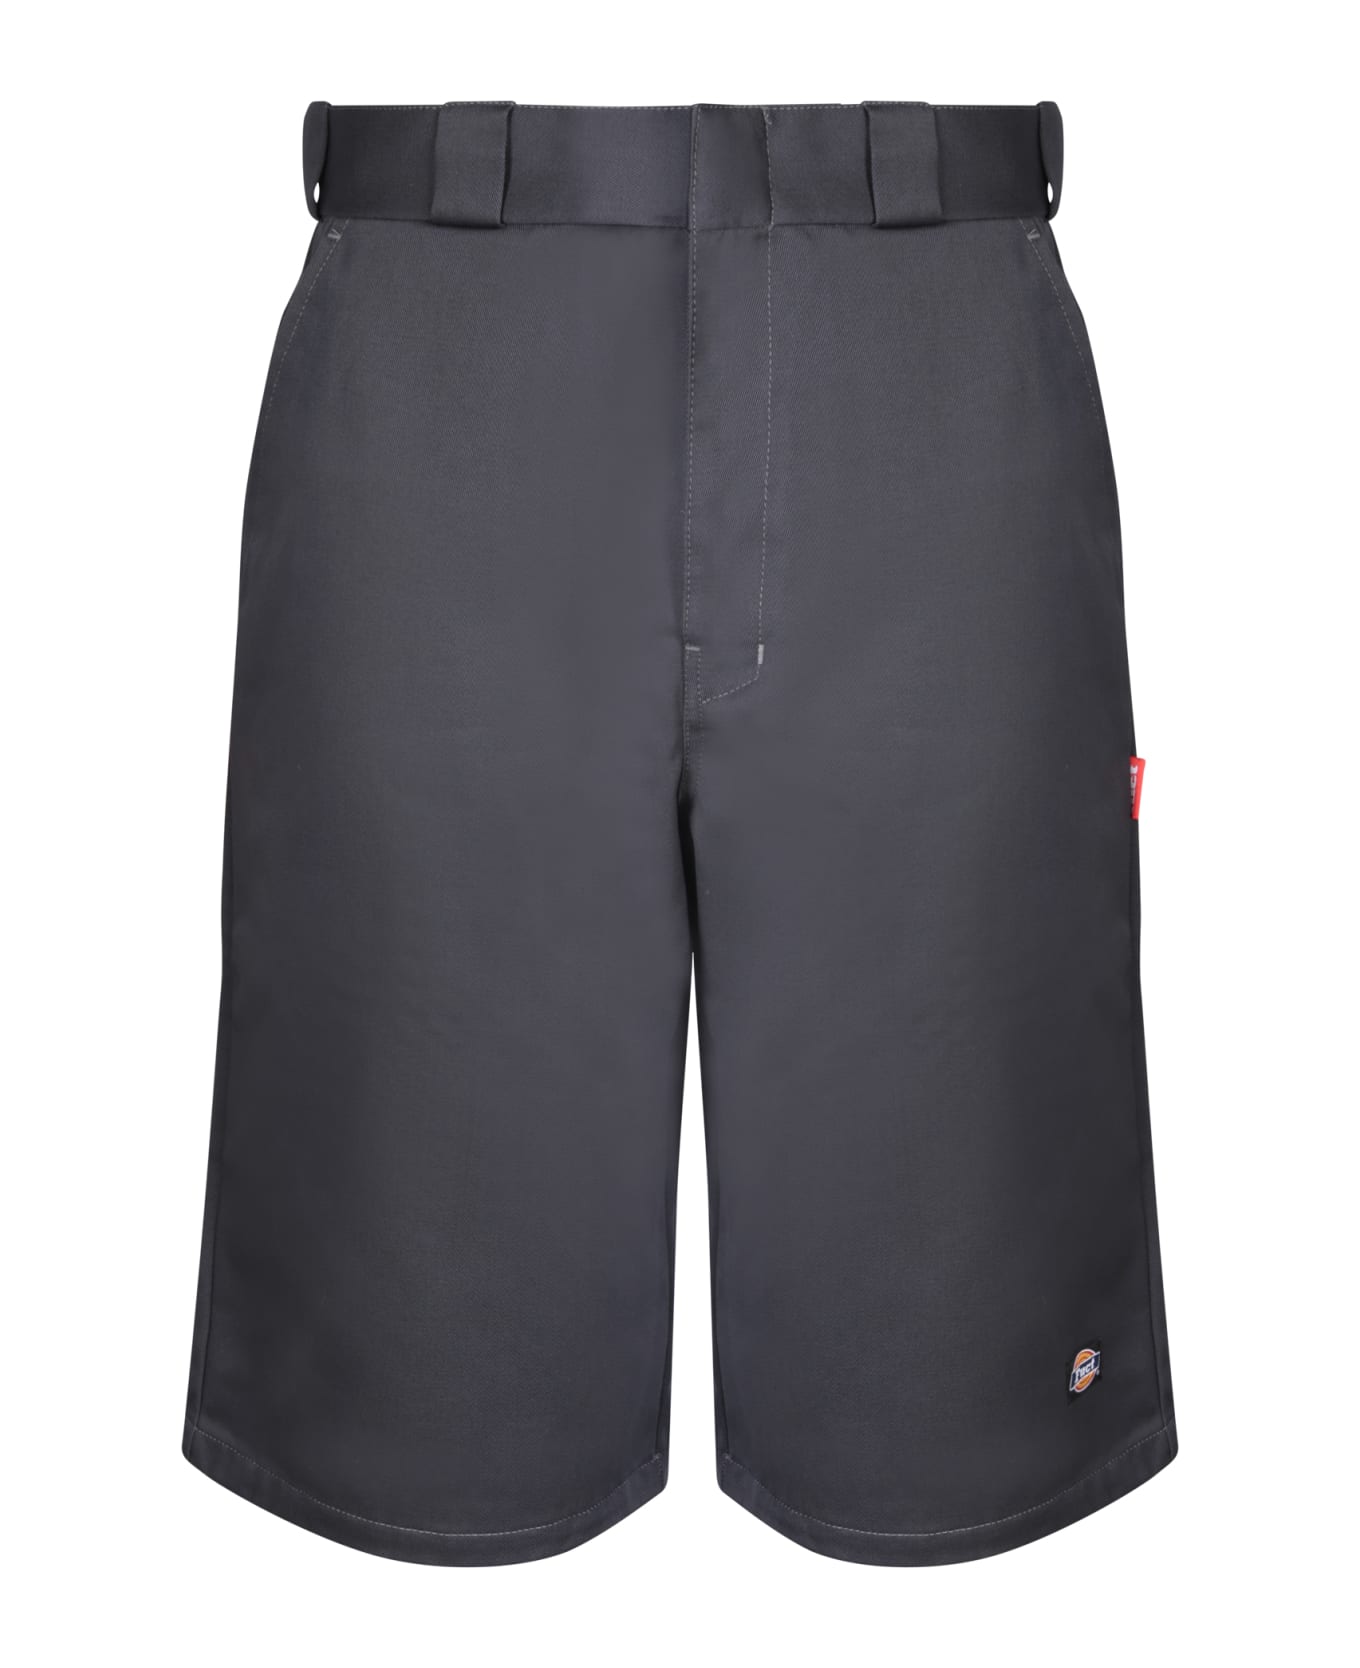 Fuct Oversize Grey Bermuda Shorts - Grey